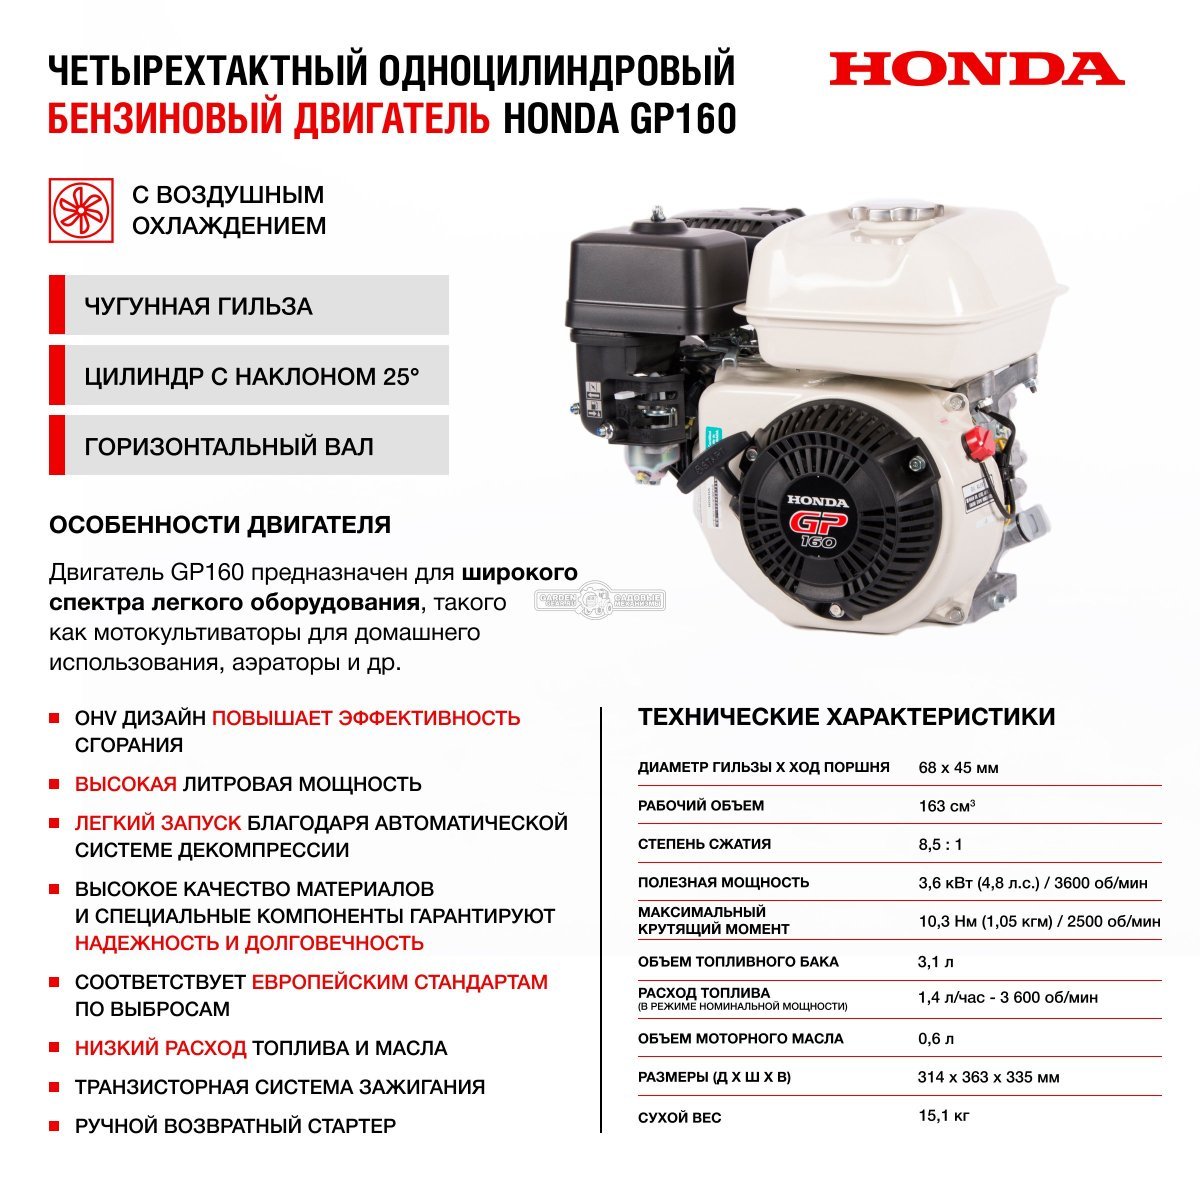 Мотопомпа бензиновая для чистой воды HND WP20PC (PRC, Honda GP160, 30 м3/ч, 2&quot;, 23 кг)